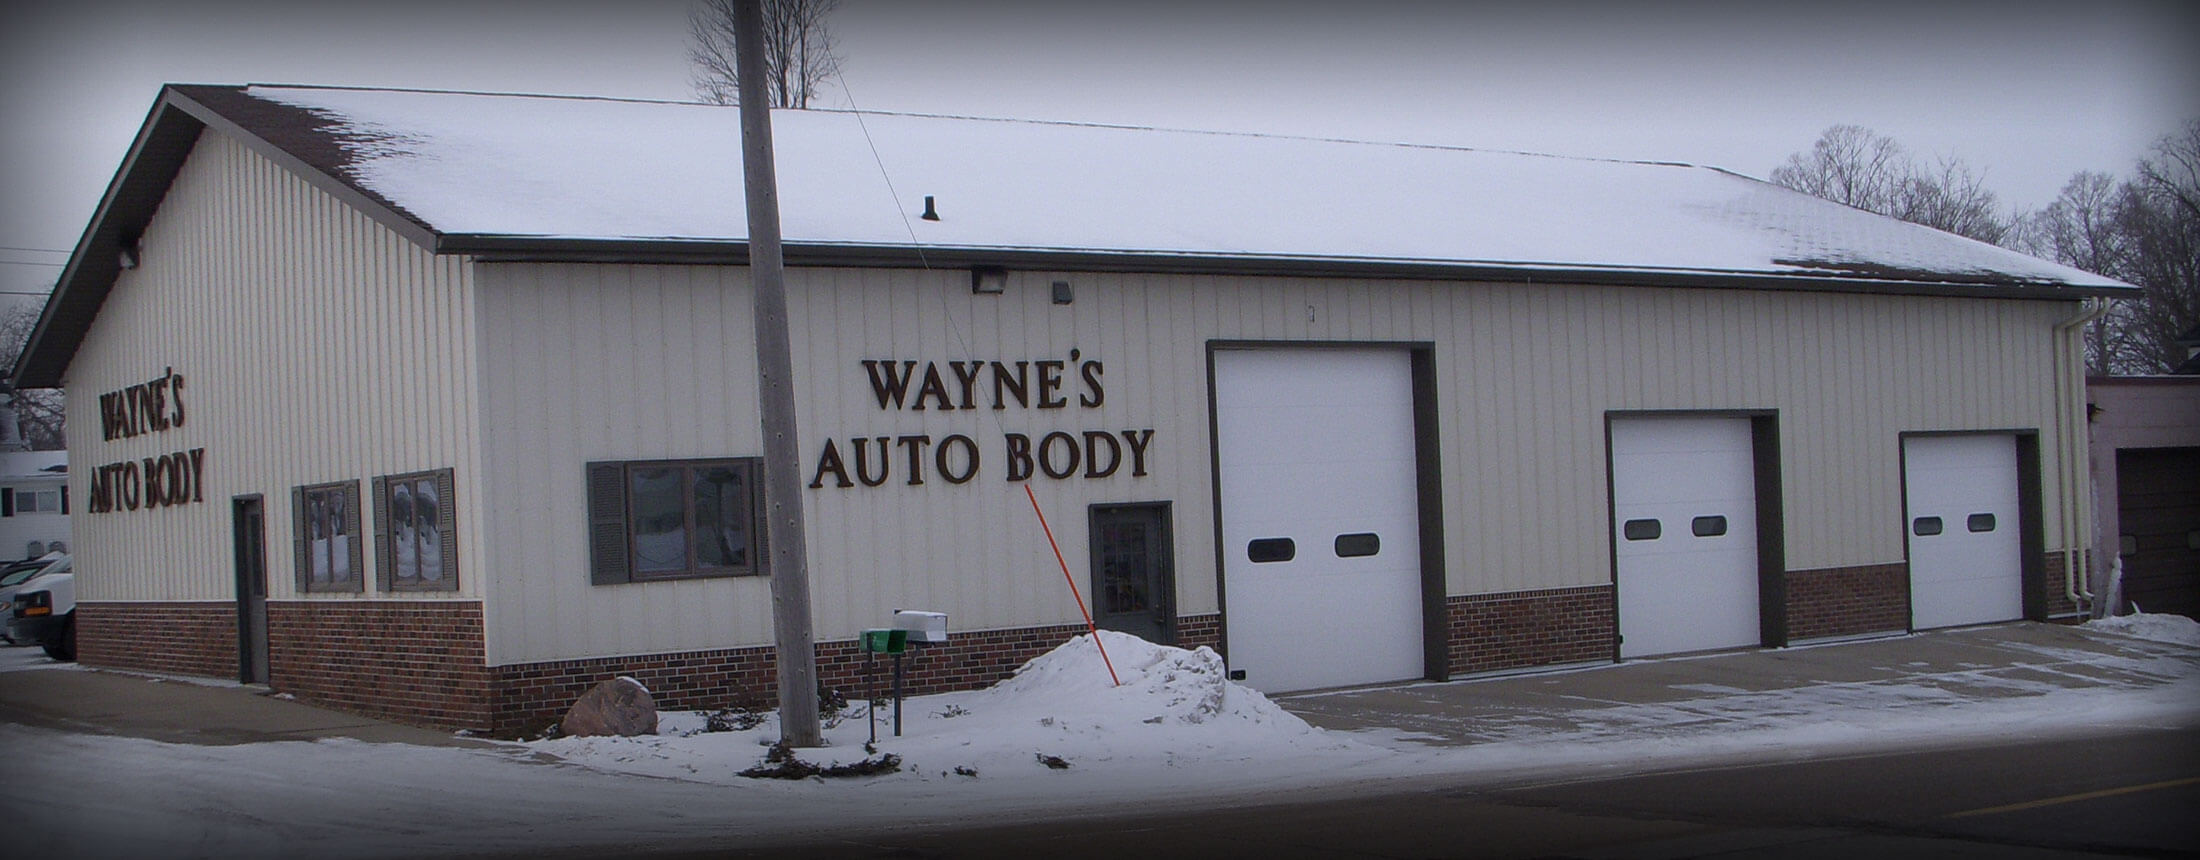 Exterior of Wayne's Auto Body shop in Le Center, MN